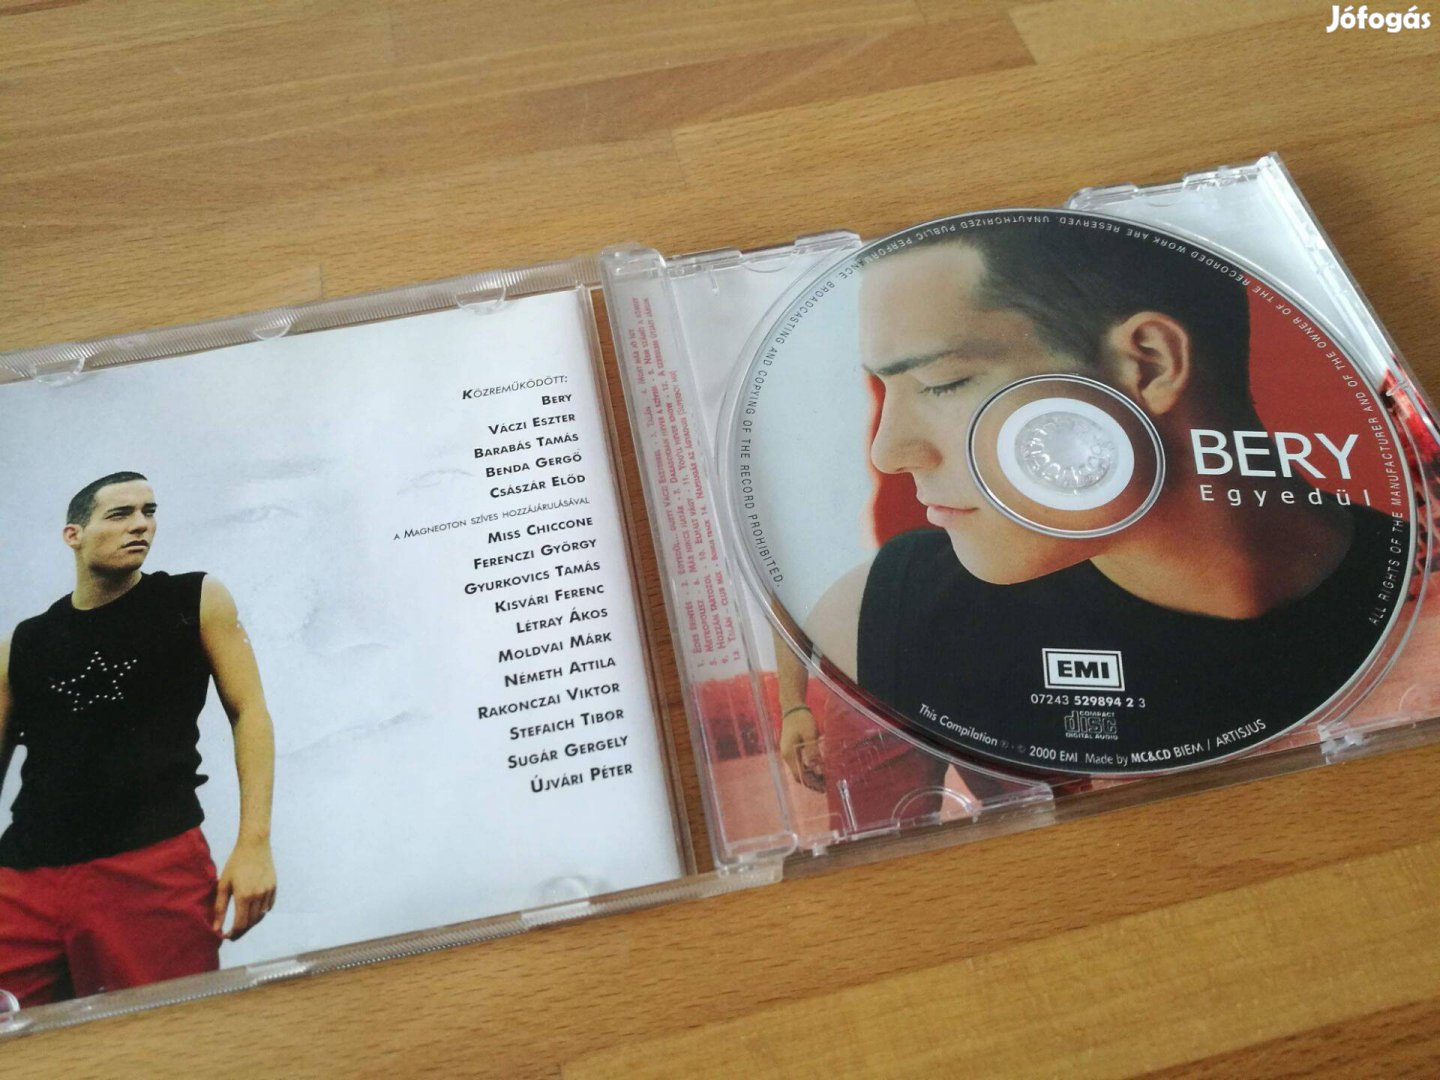 Bery - Egyedül (EMI, 2000, CD)